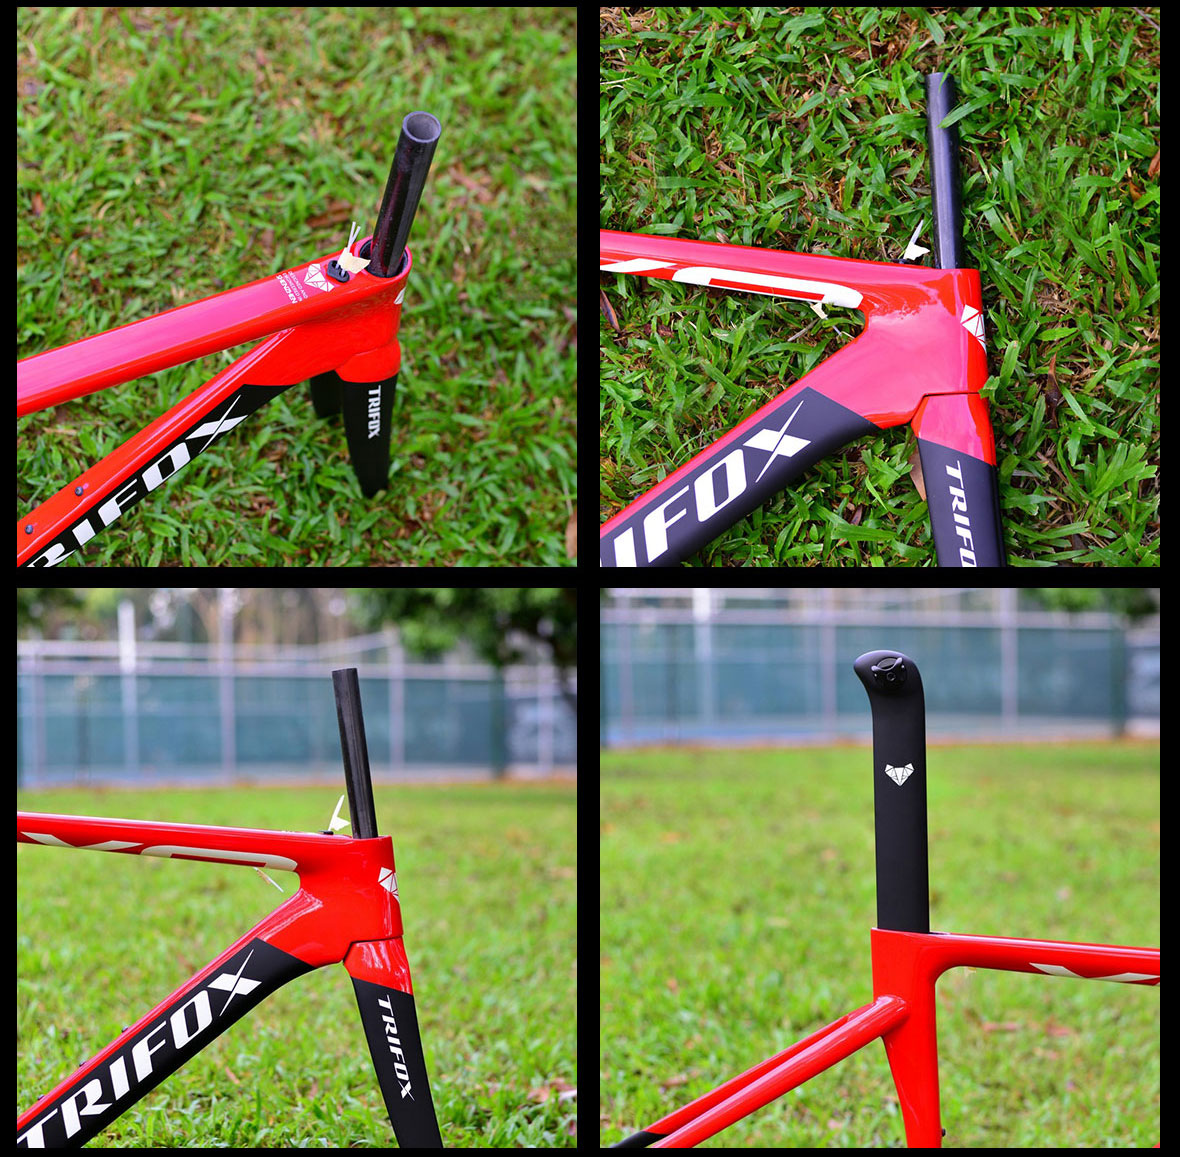 Trifox carbon fibre bike X8 Details 2